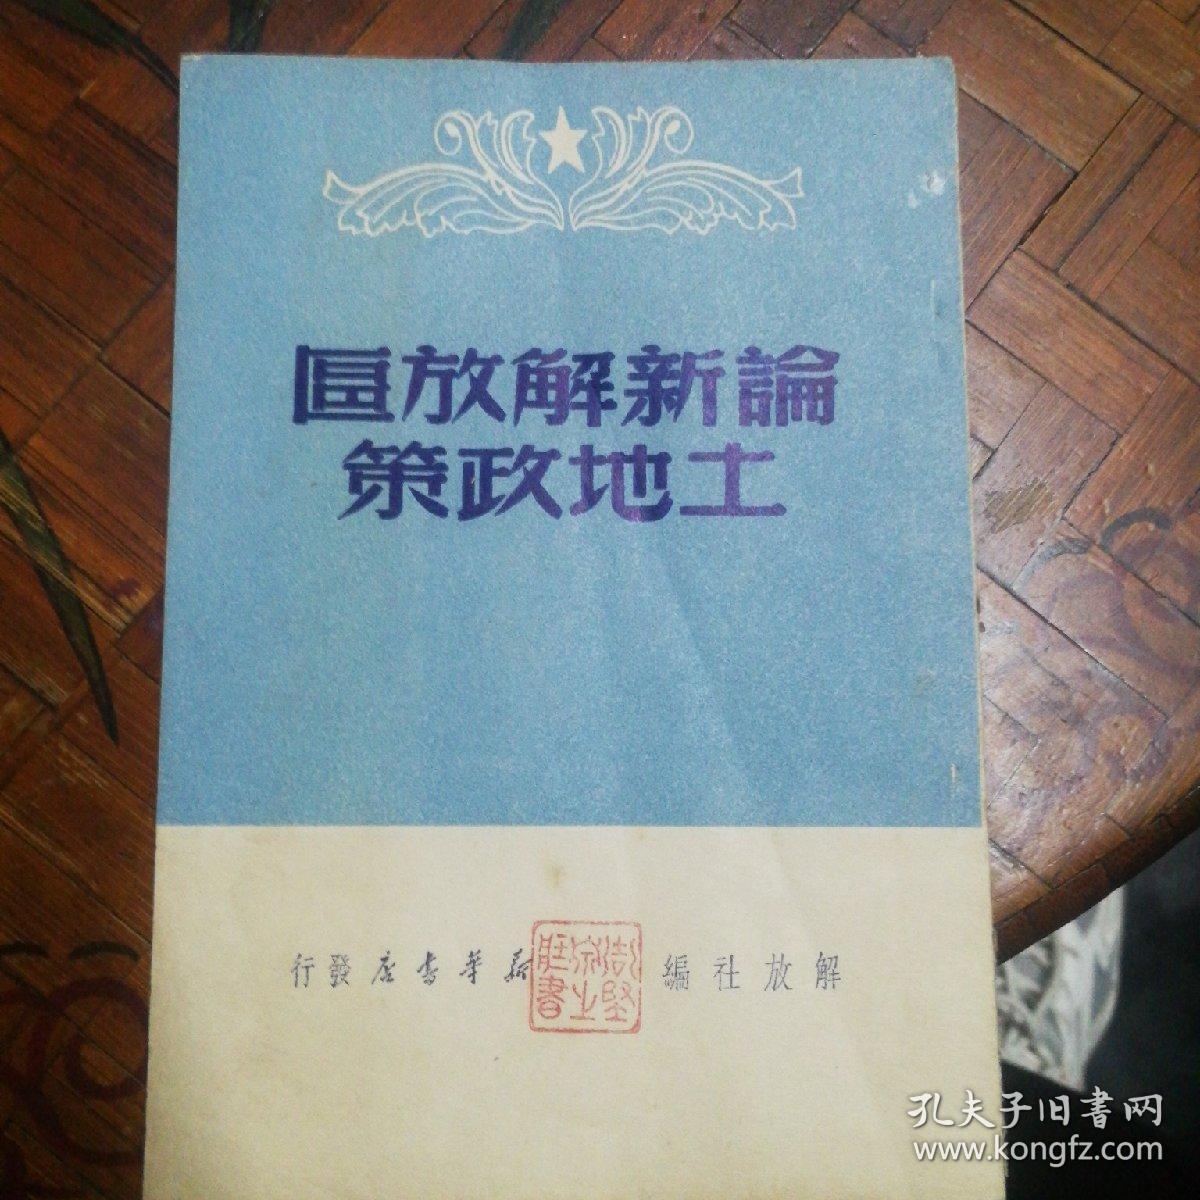 论新解放区土地政策  1949年  解放社  封面印章